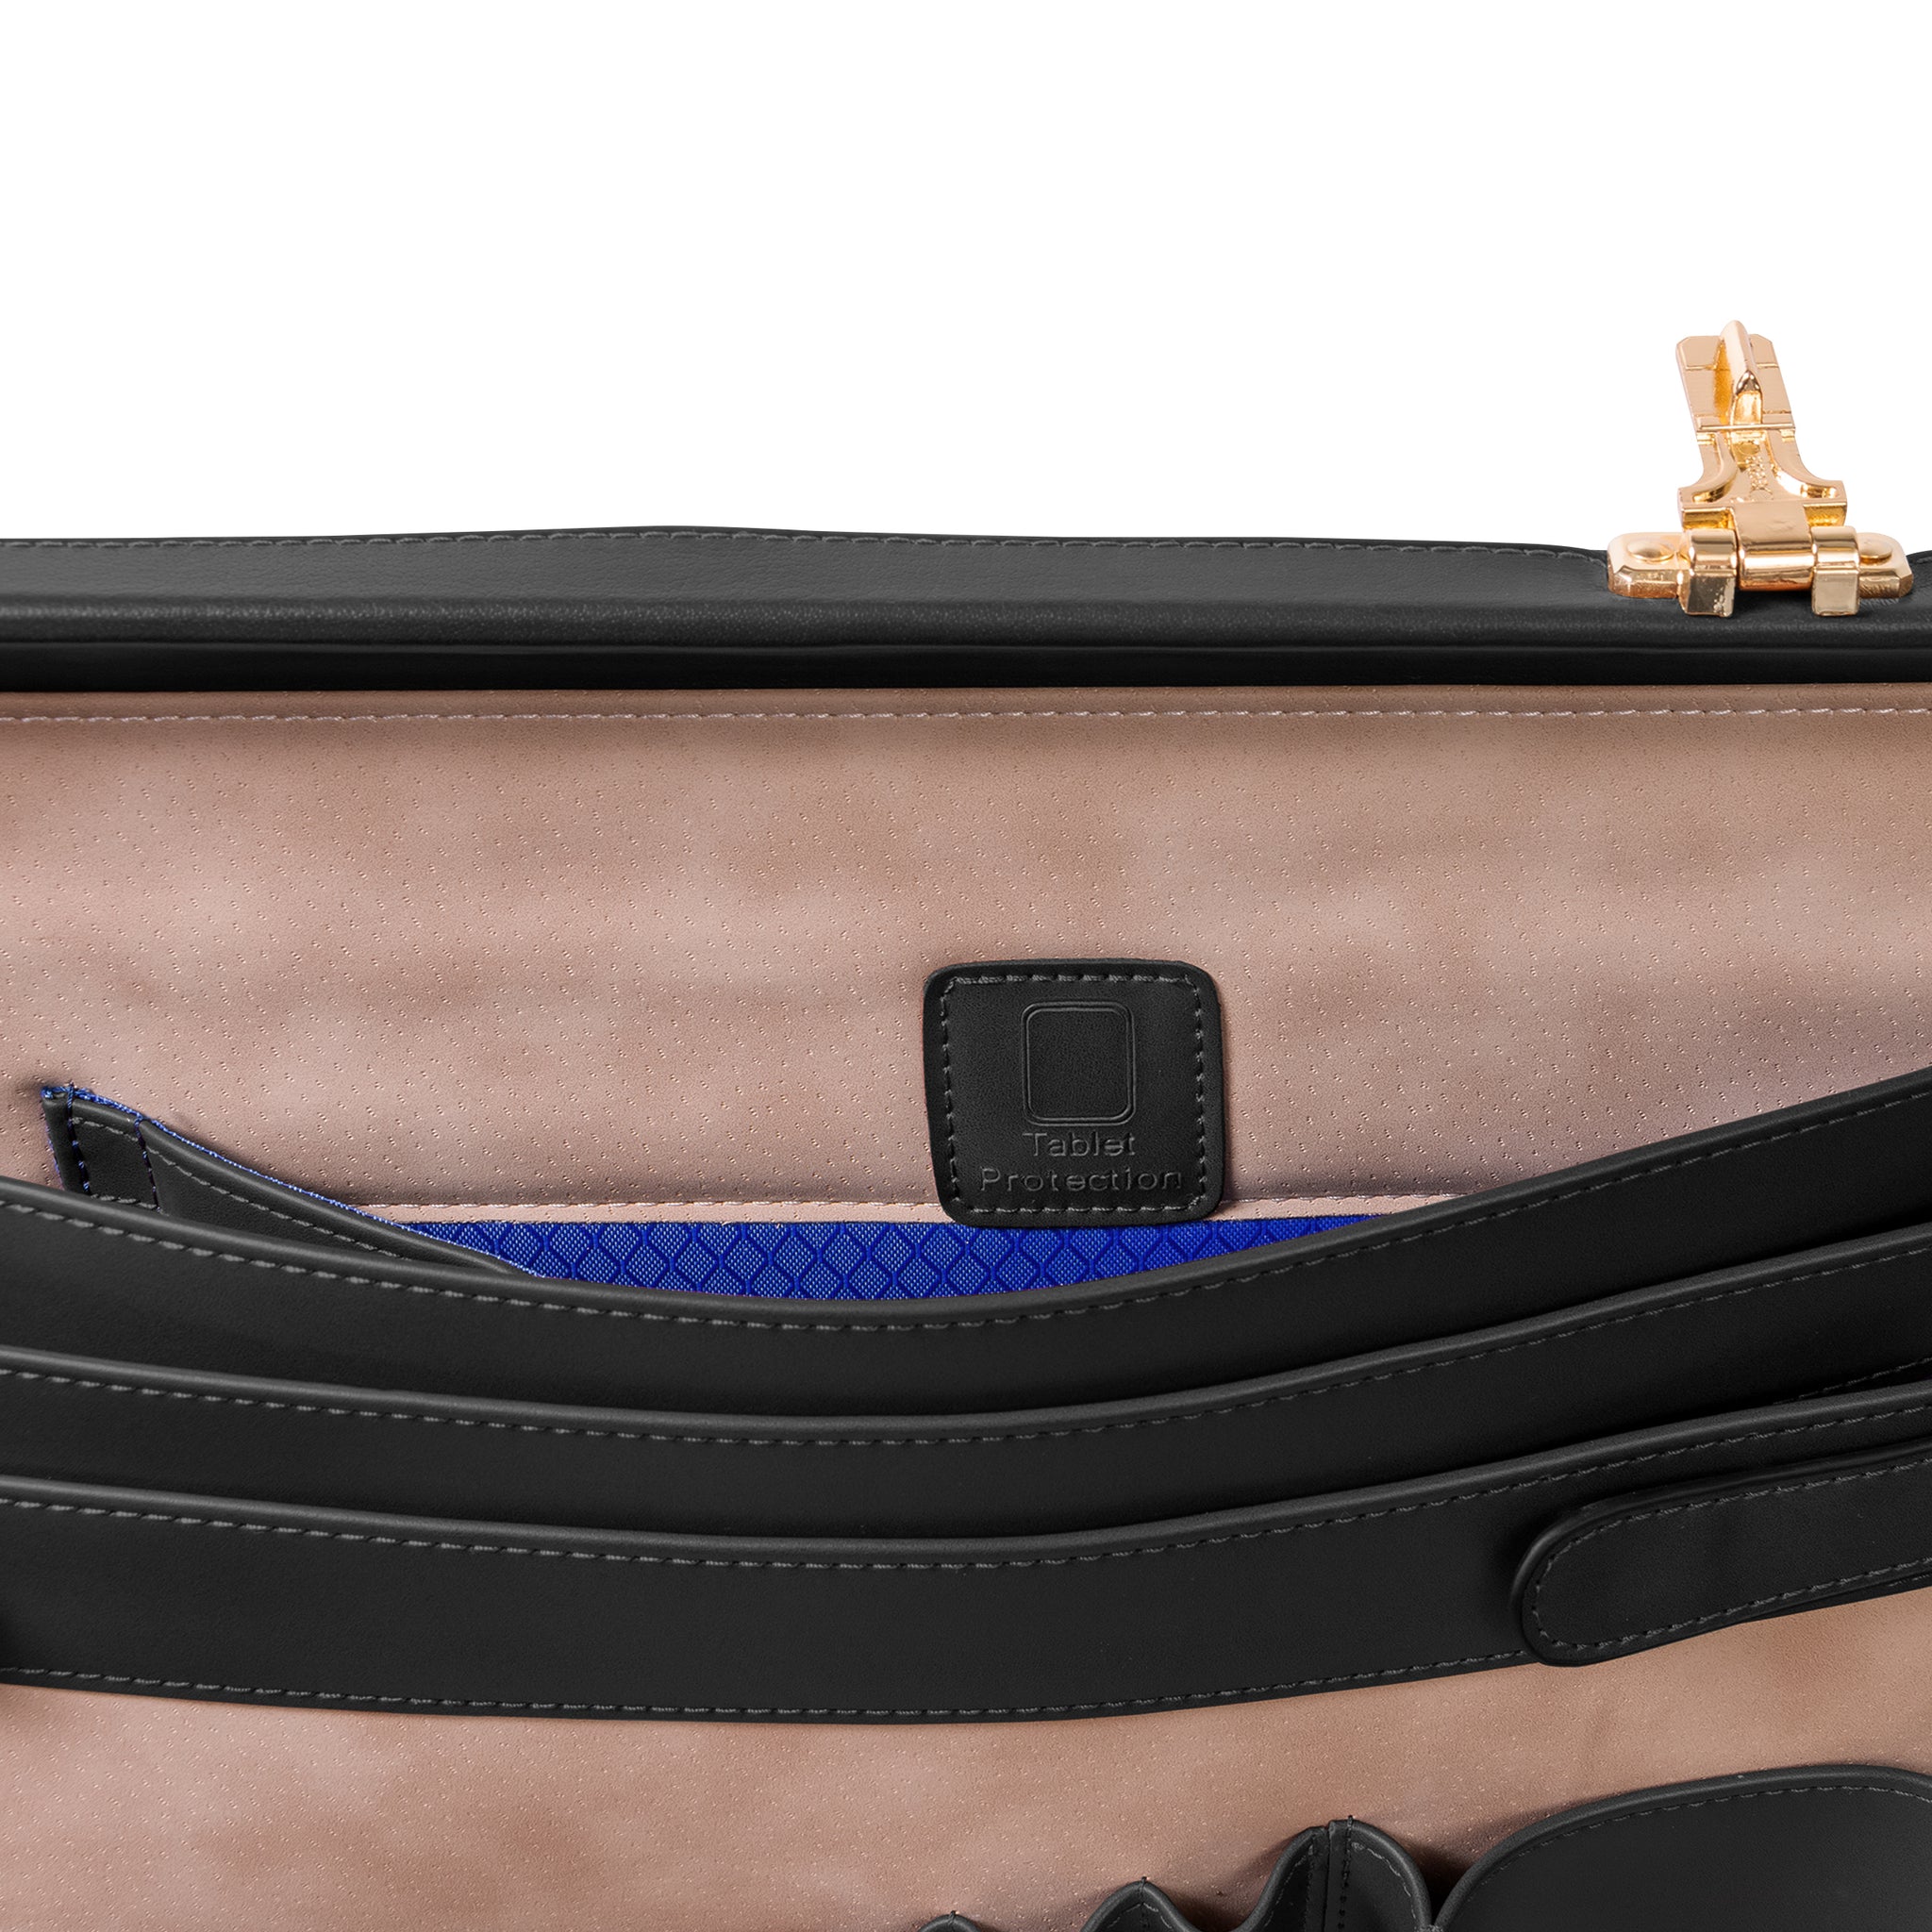 McKlein COUGHLIN Leather 4.5" Expandable Attaché Briefcase